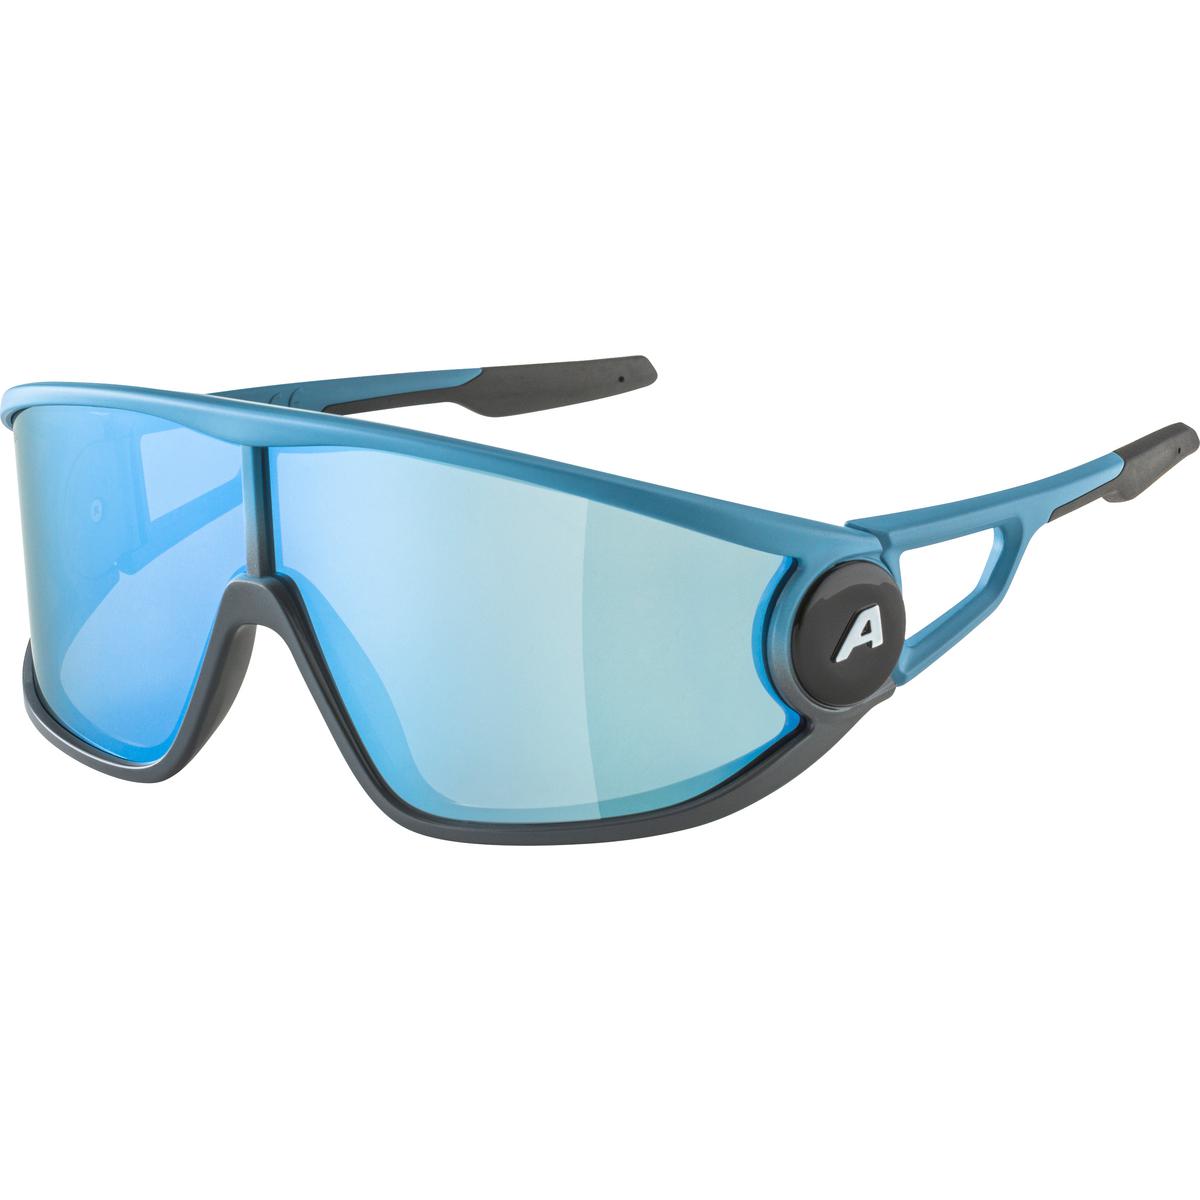 Produktbild von Alpina Legend Brille - smoke-blue matt / mirror blue